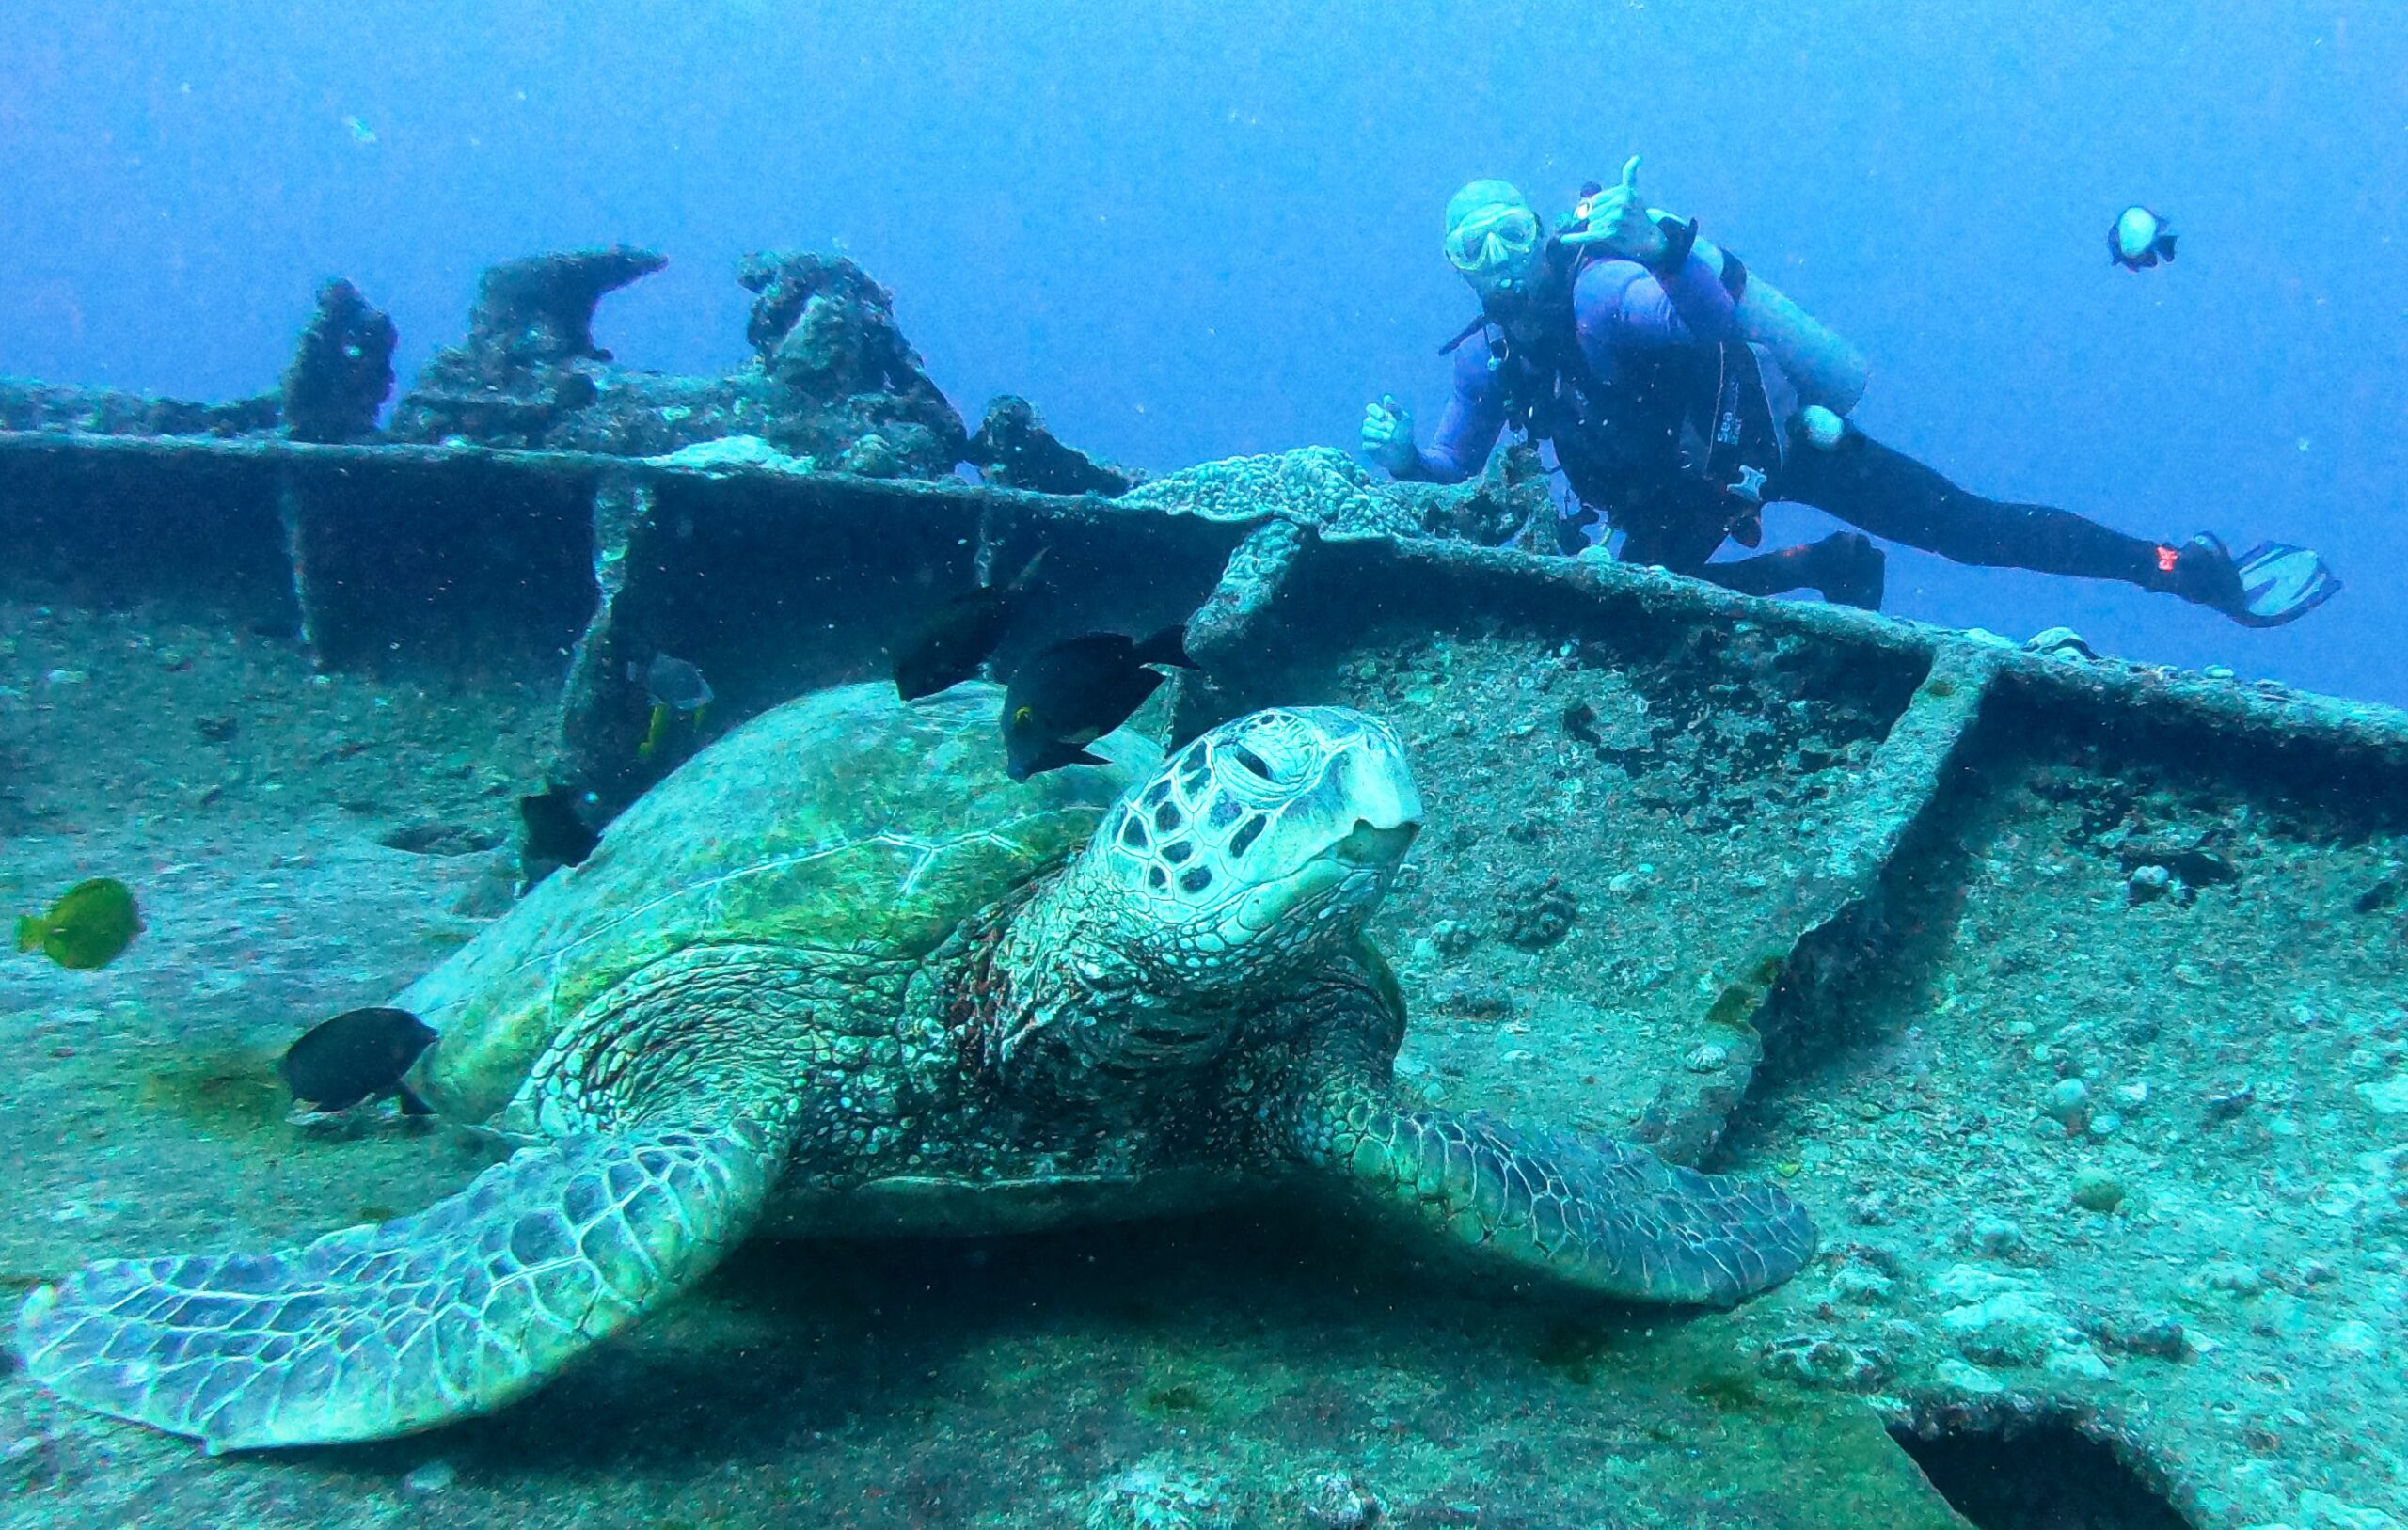 Michael Schmitt diving the Sea Tiger shipwreck